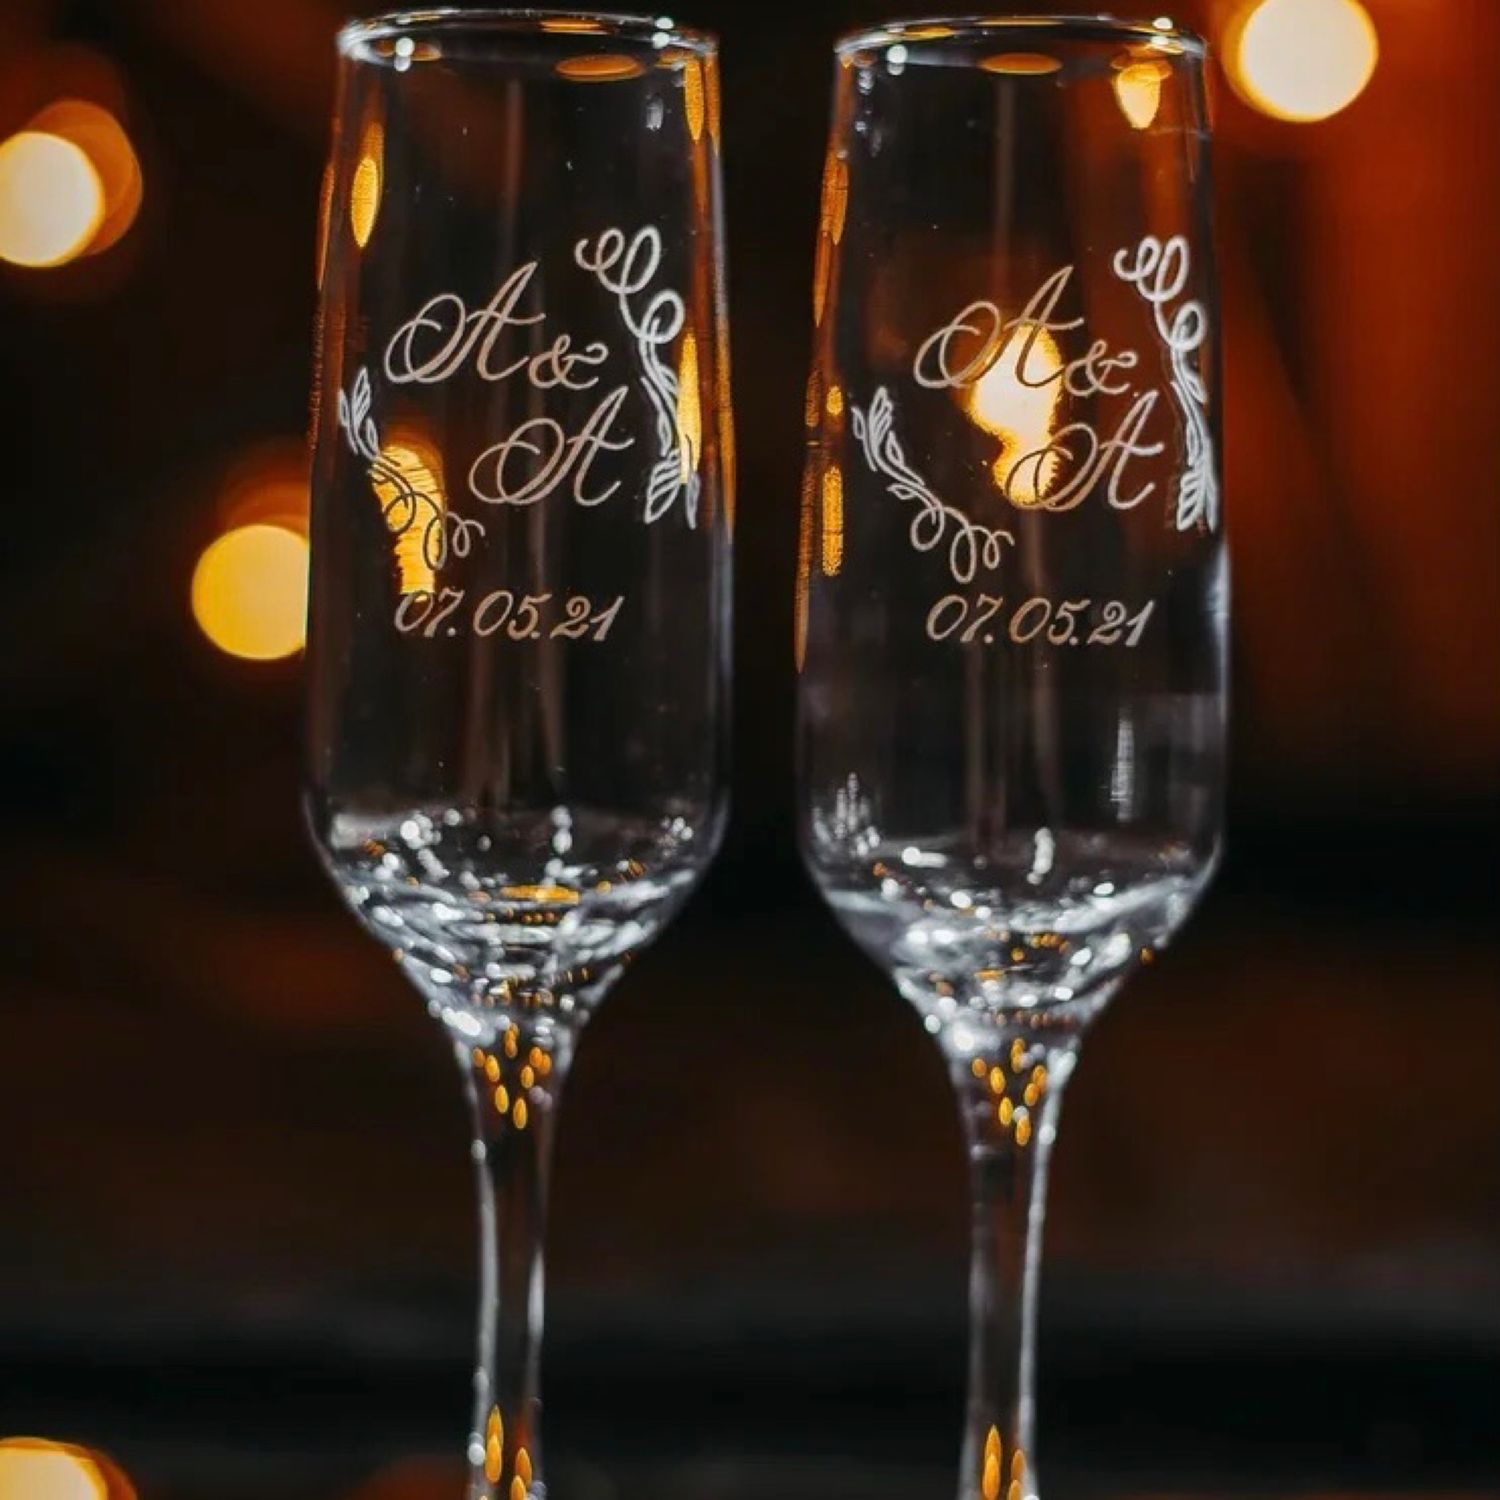 Свадебные бокалы для шампанского